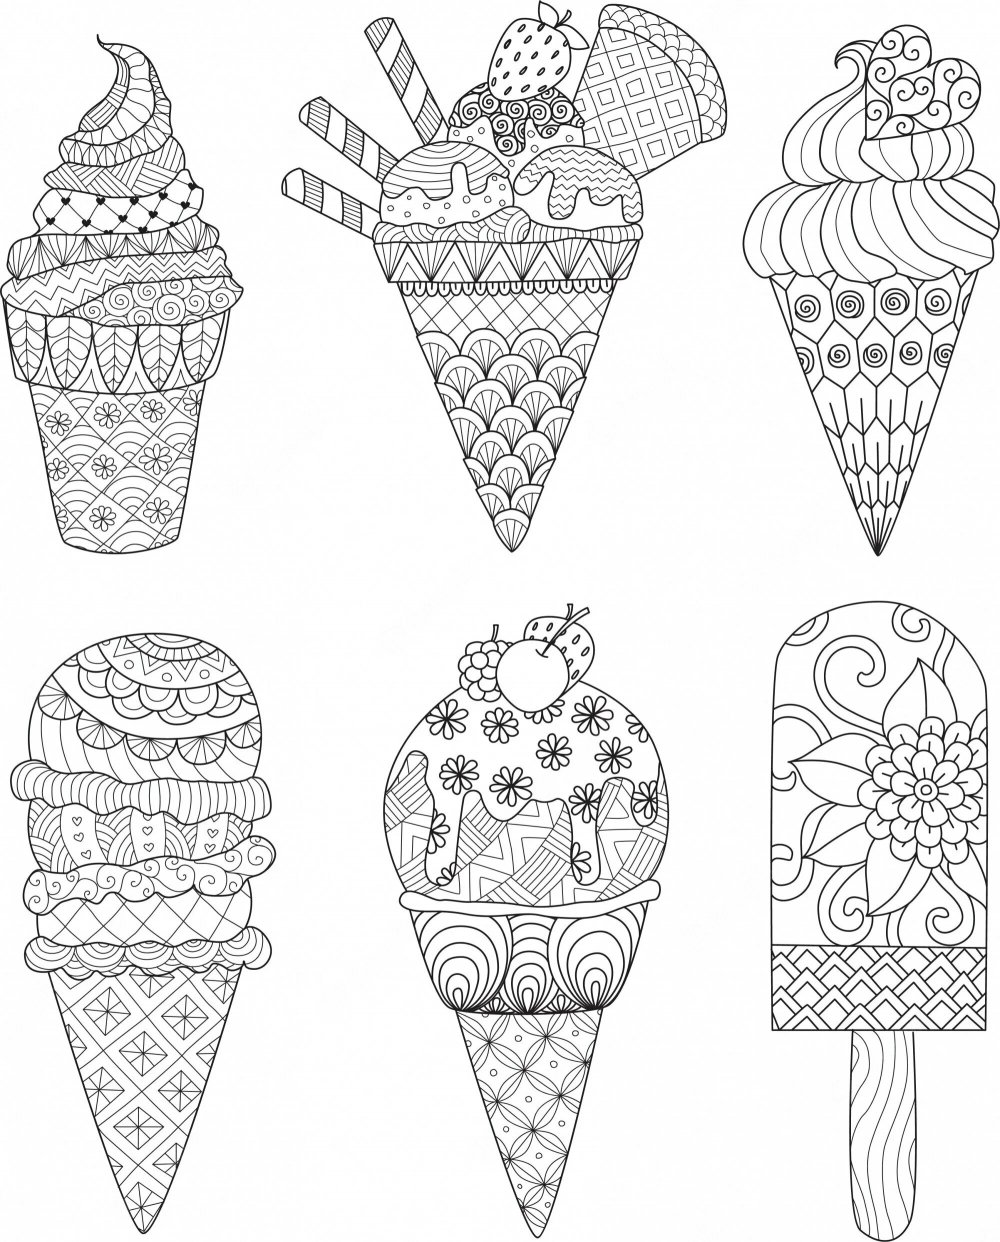 Мороженое раскраска для детей